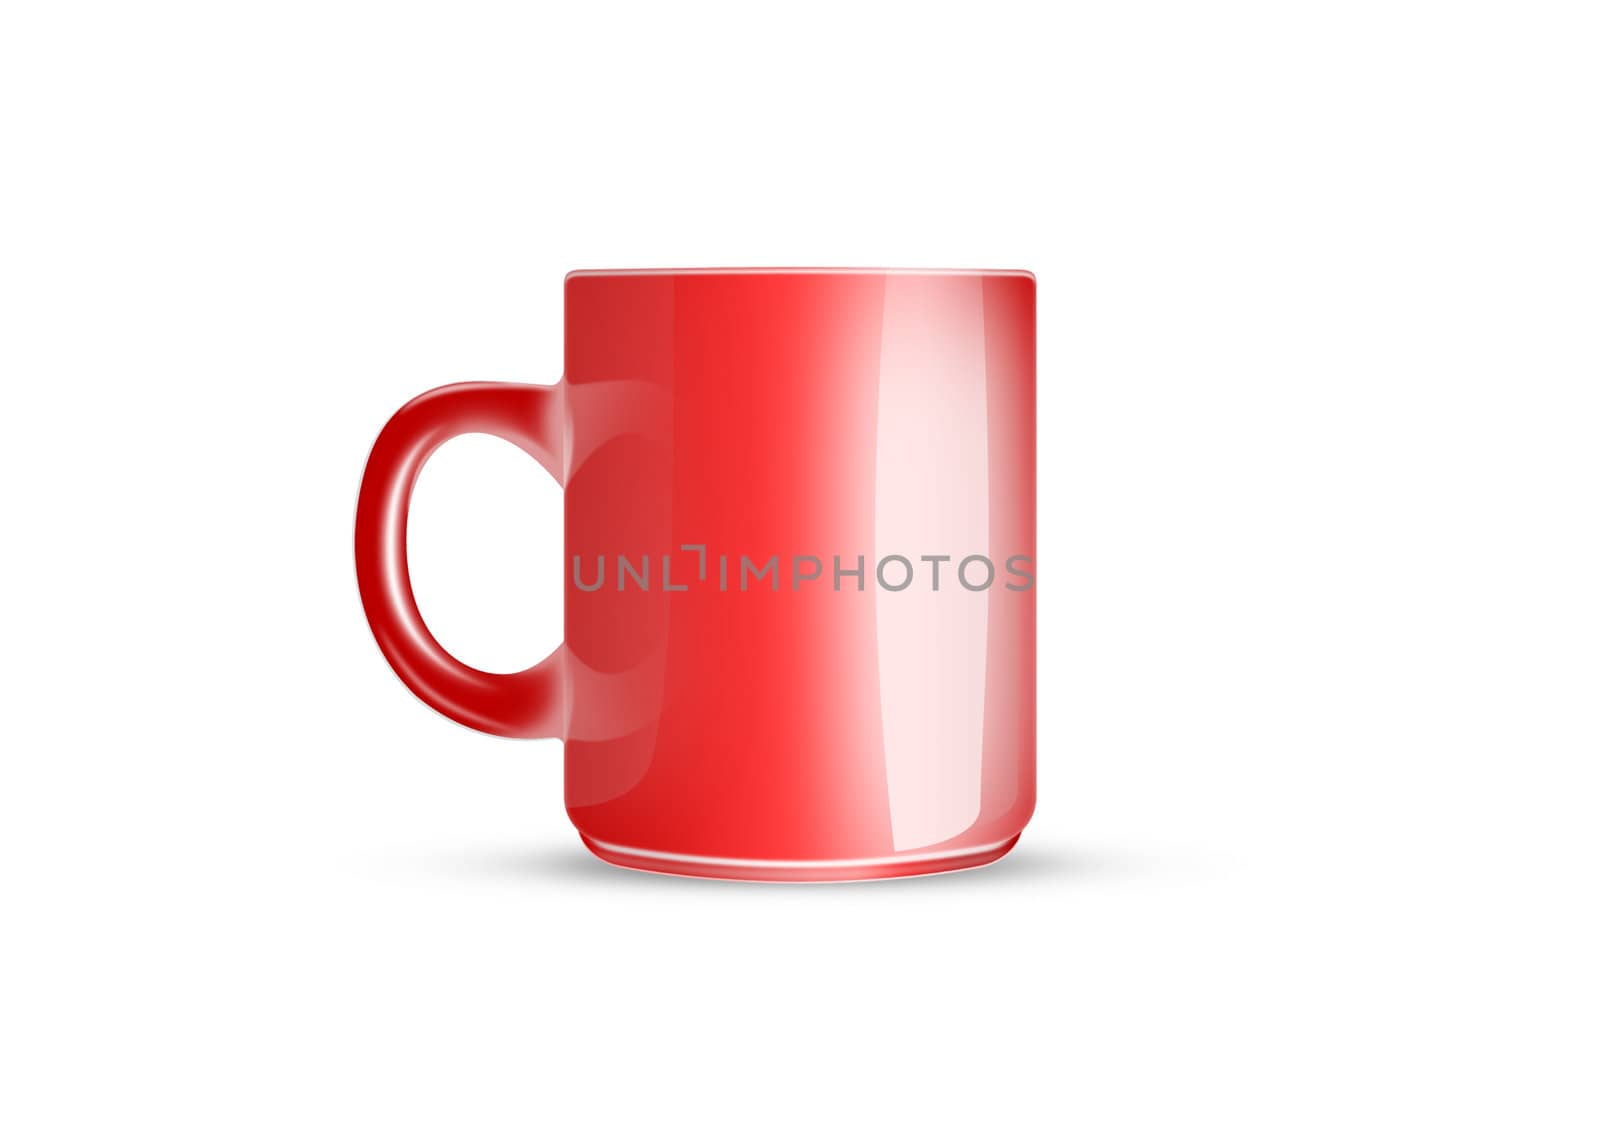 Tea mug red isolated on white background